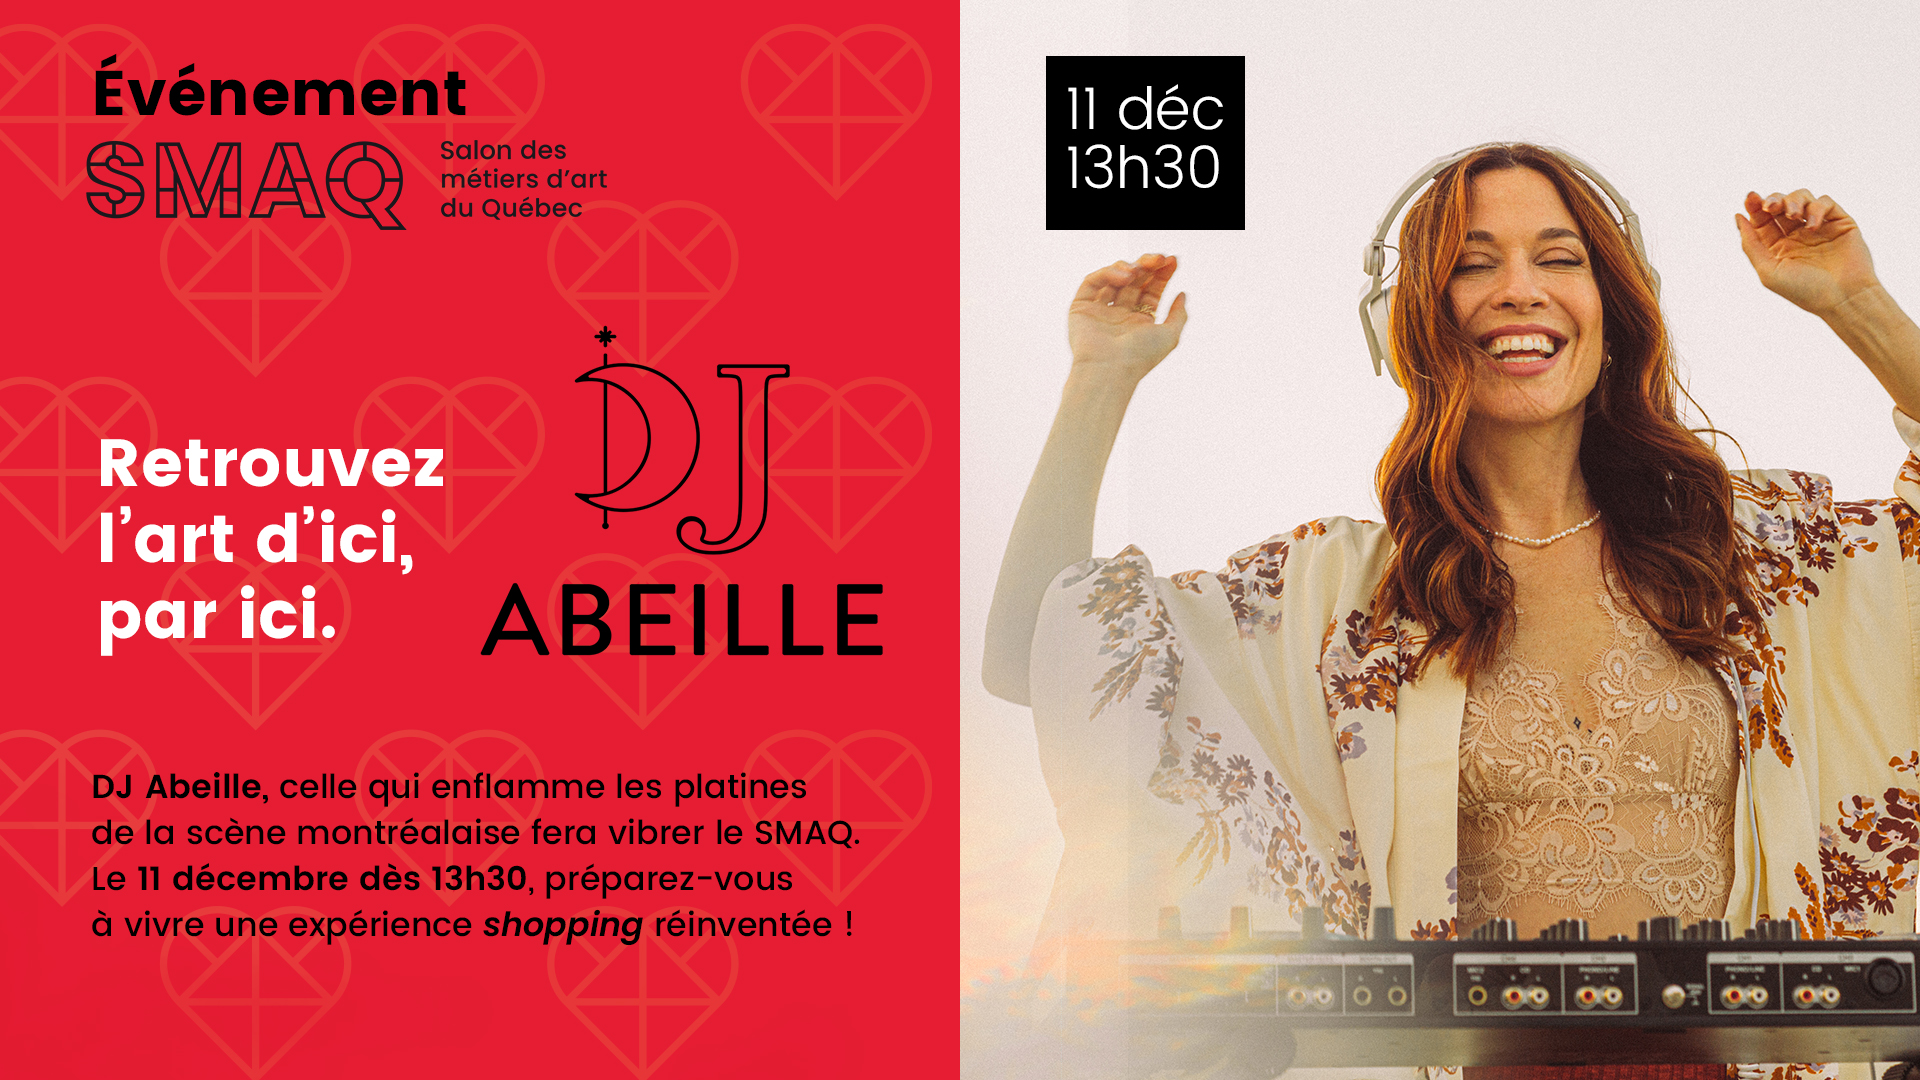 DJ Abeille, l'incroyable expérience shopping musicale I 11 décembre à 13h 30 